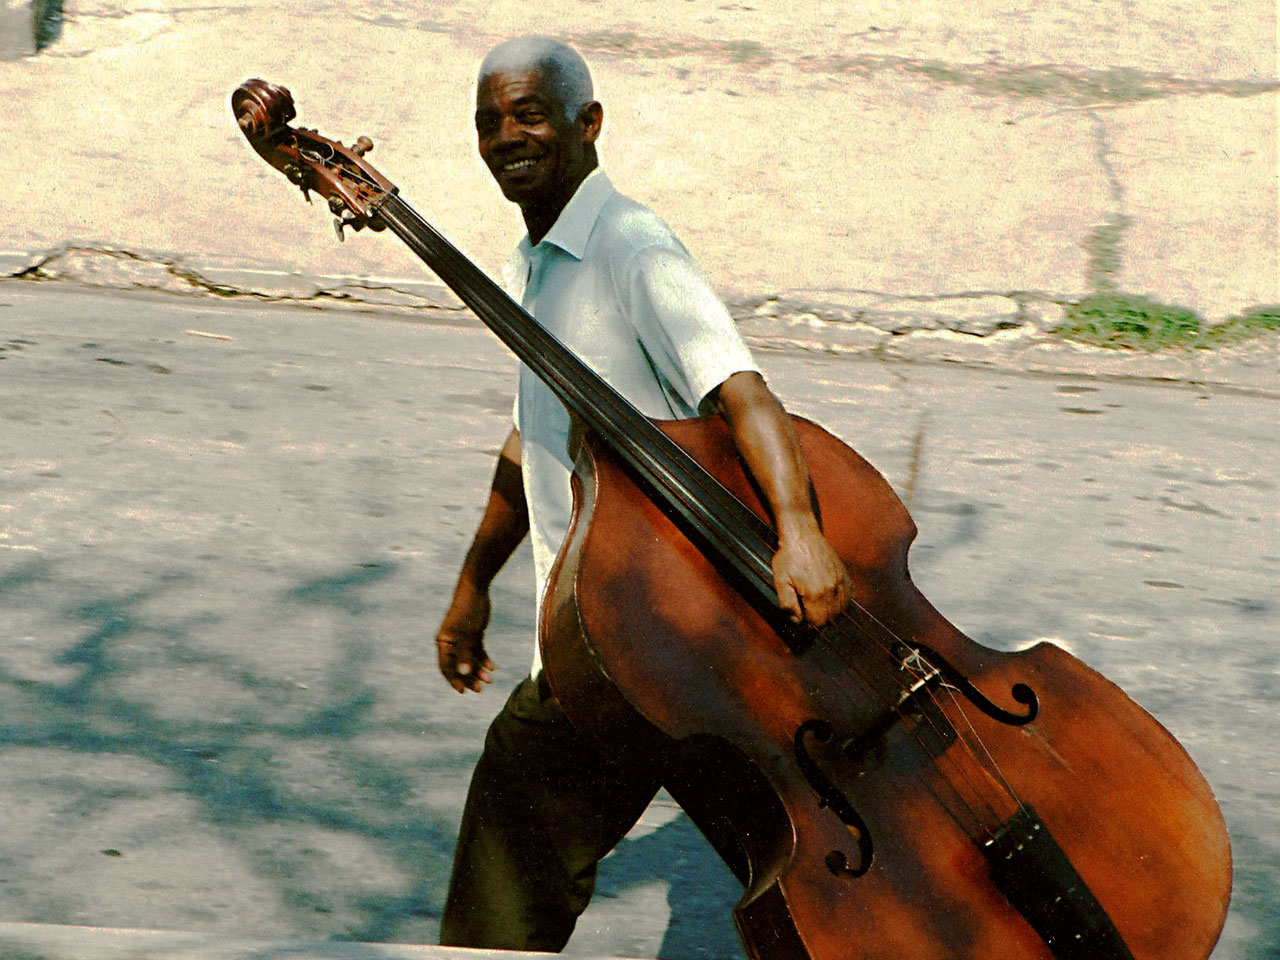 On my way to work, Musician in Santiago de Cuba